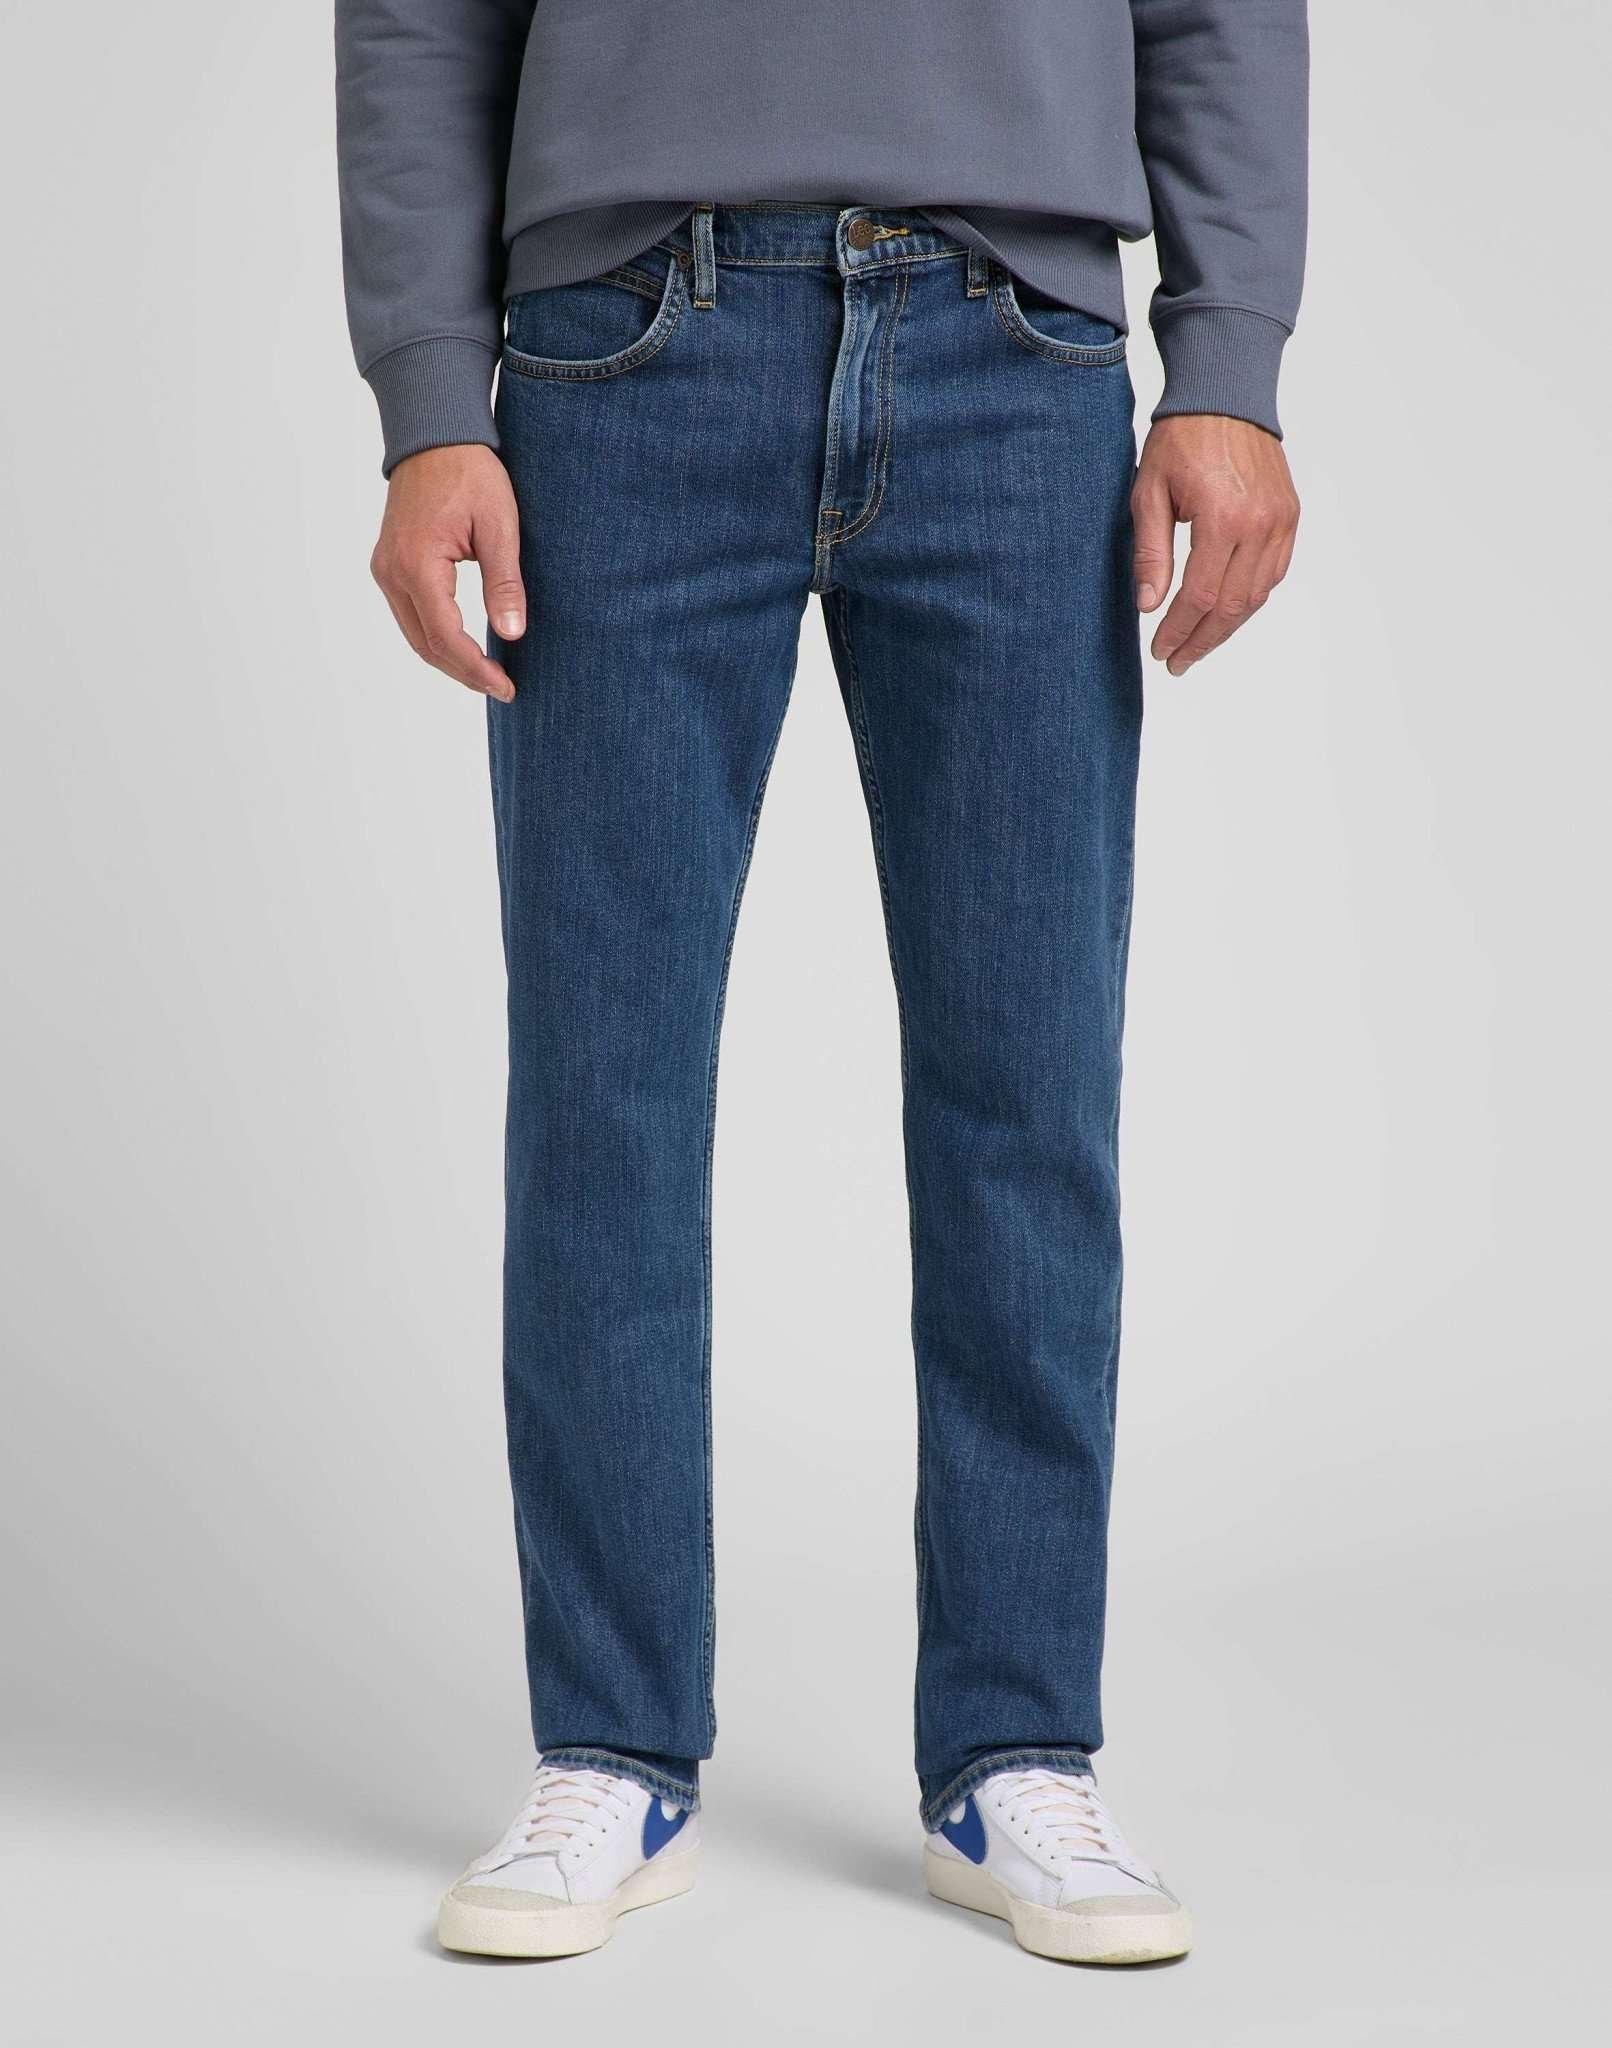 Jeans Straight Leg Brooklyn Herren Blau Denim L32/W30 von Lee